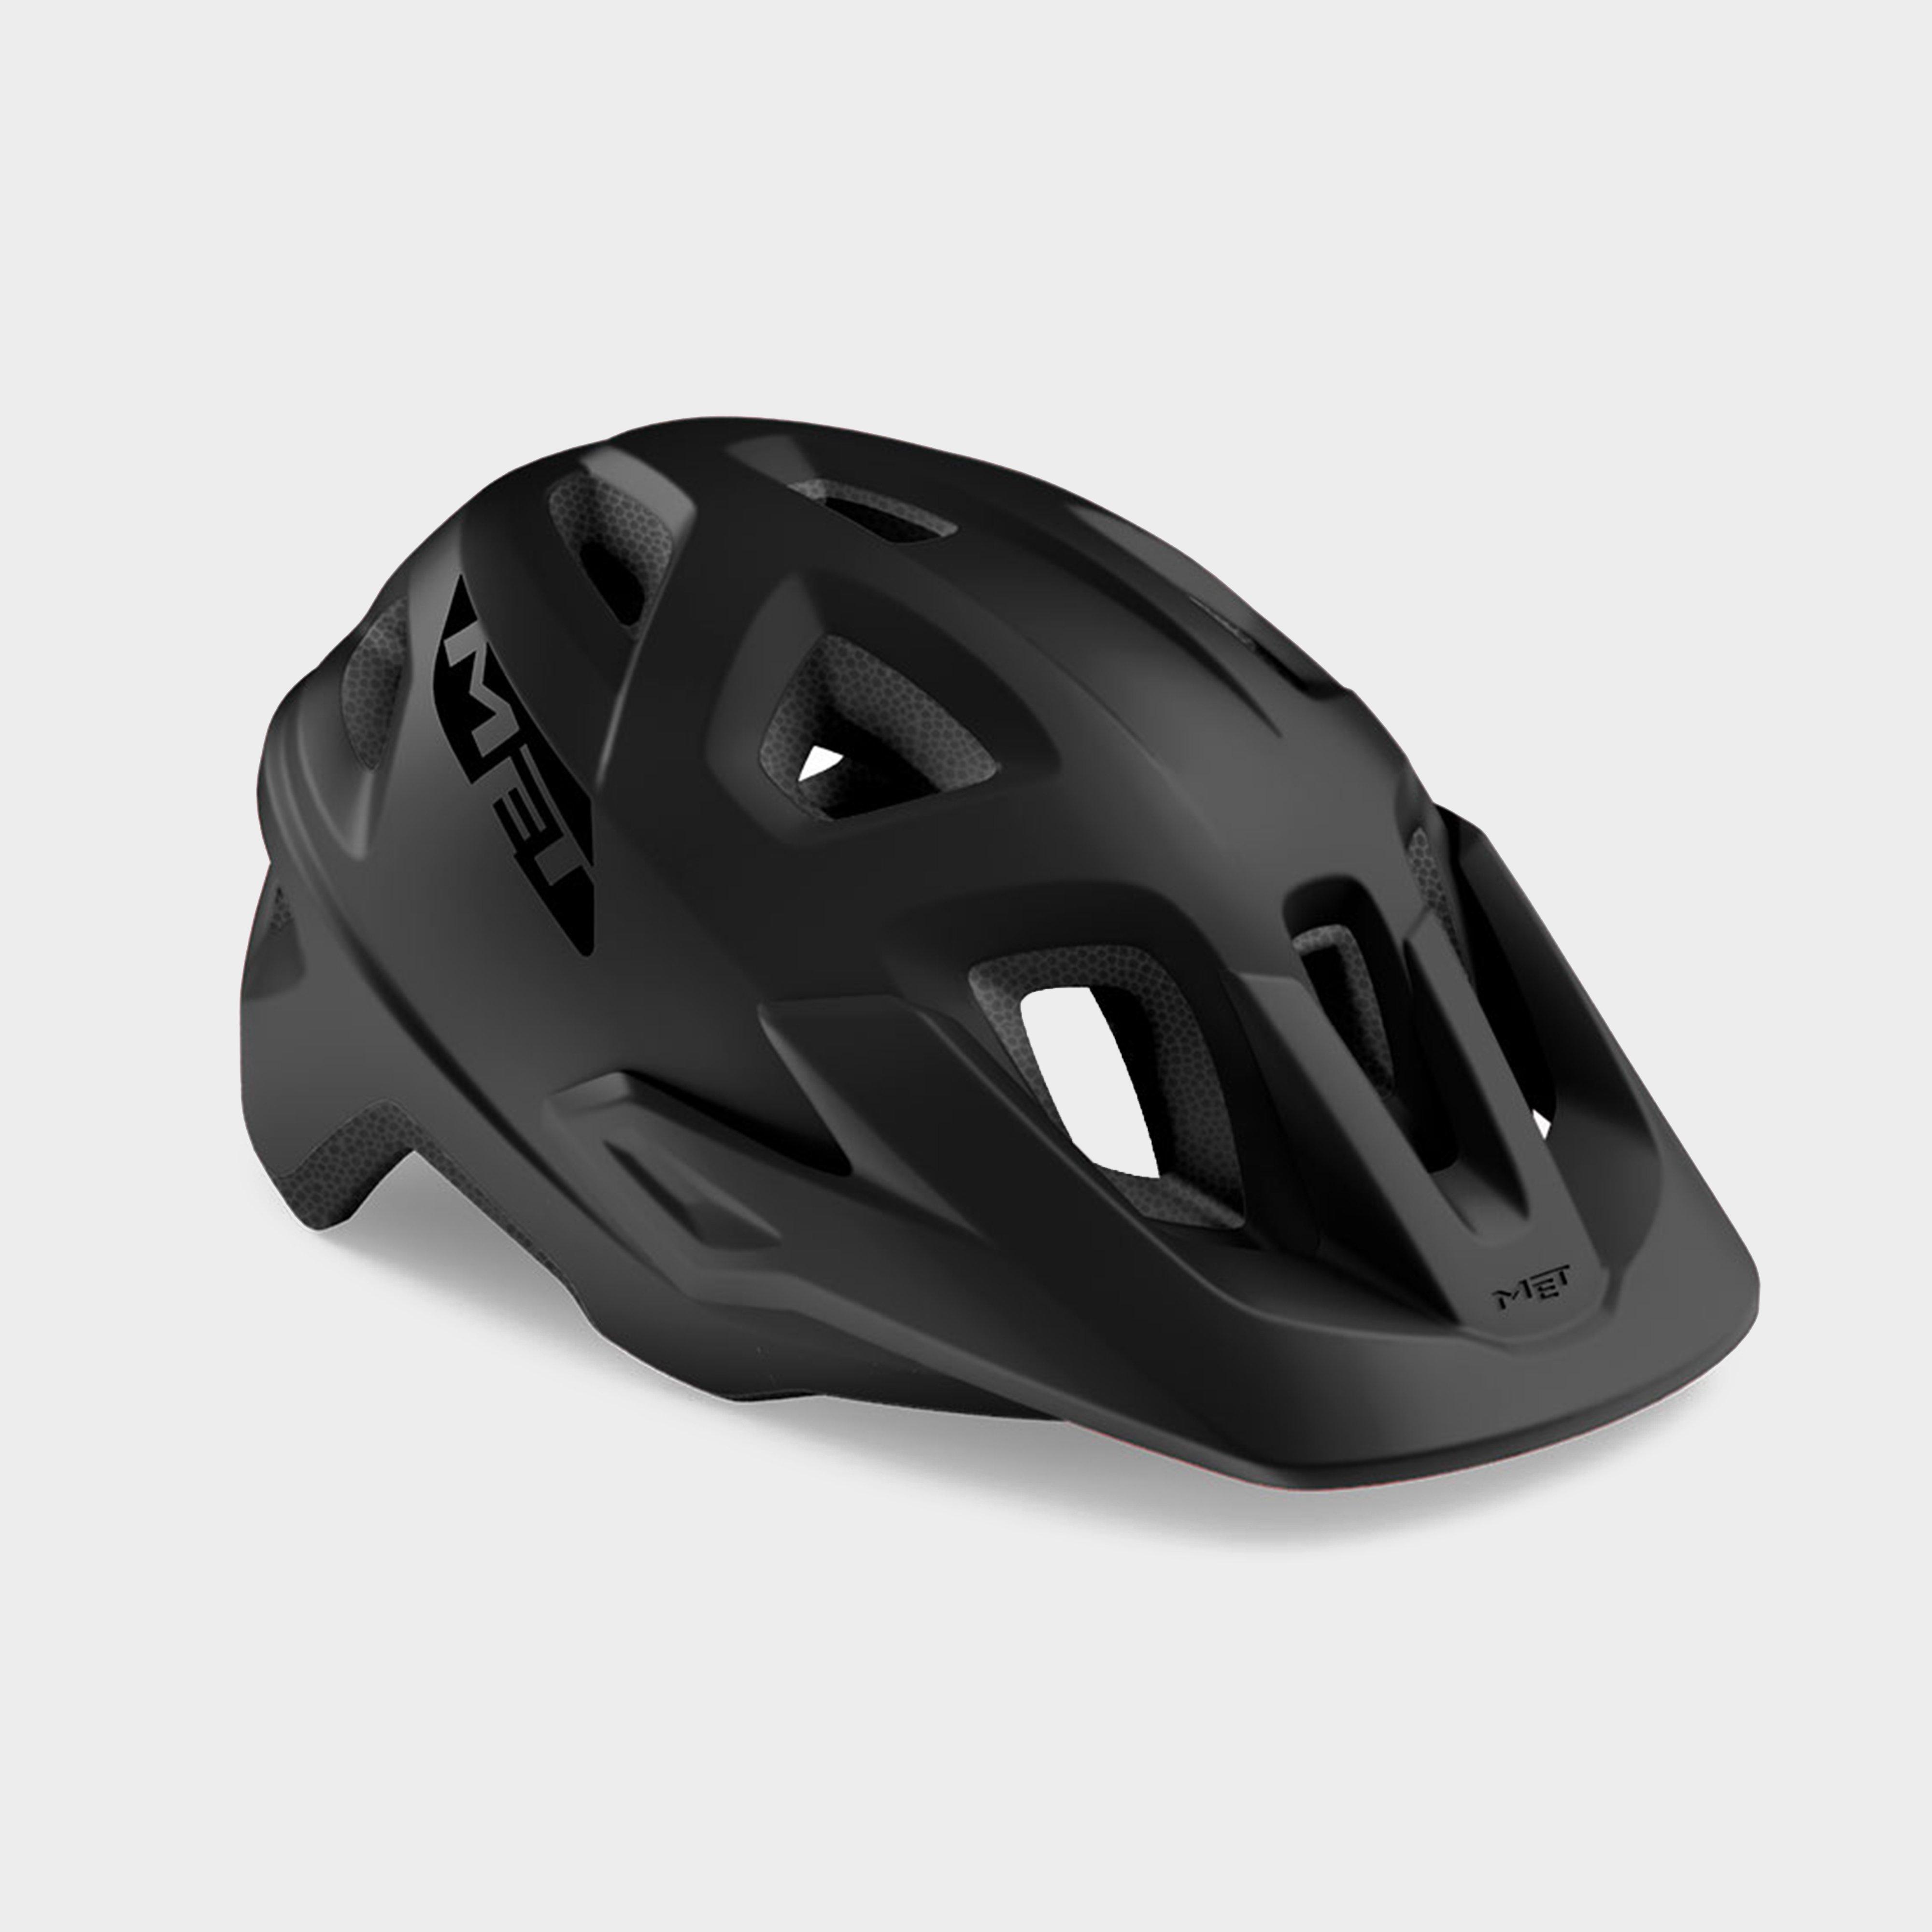 Met Met Echo Bicycle Helmet (grey) - Black/black  Black/black